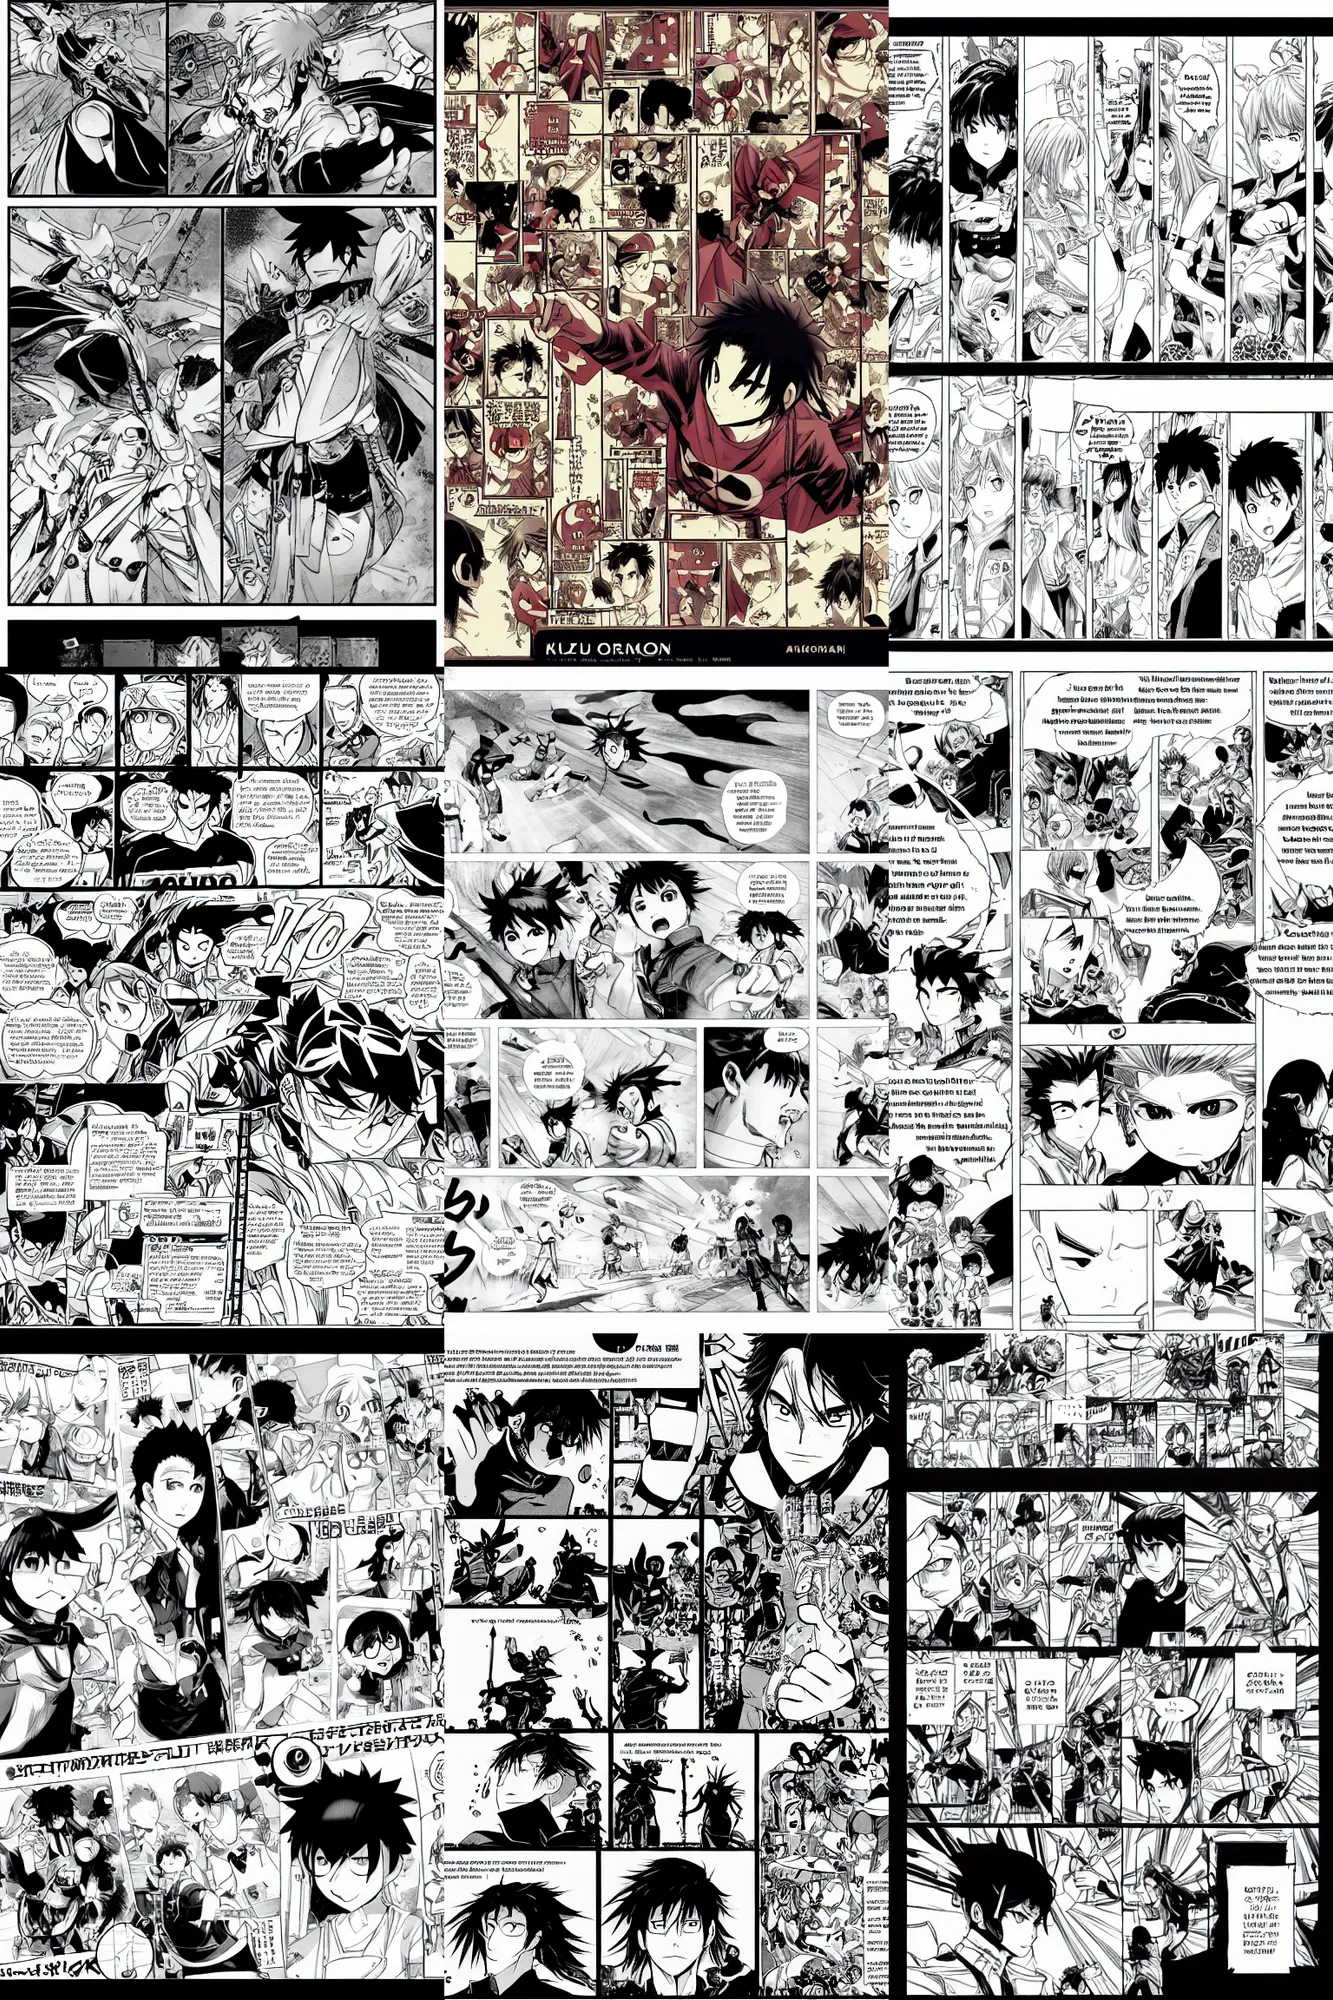 Prompt: manga,panel layout,hero,kazuhiro ootomo